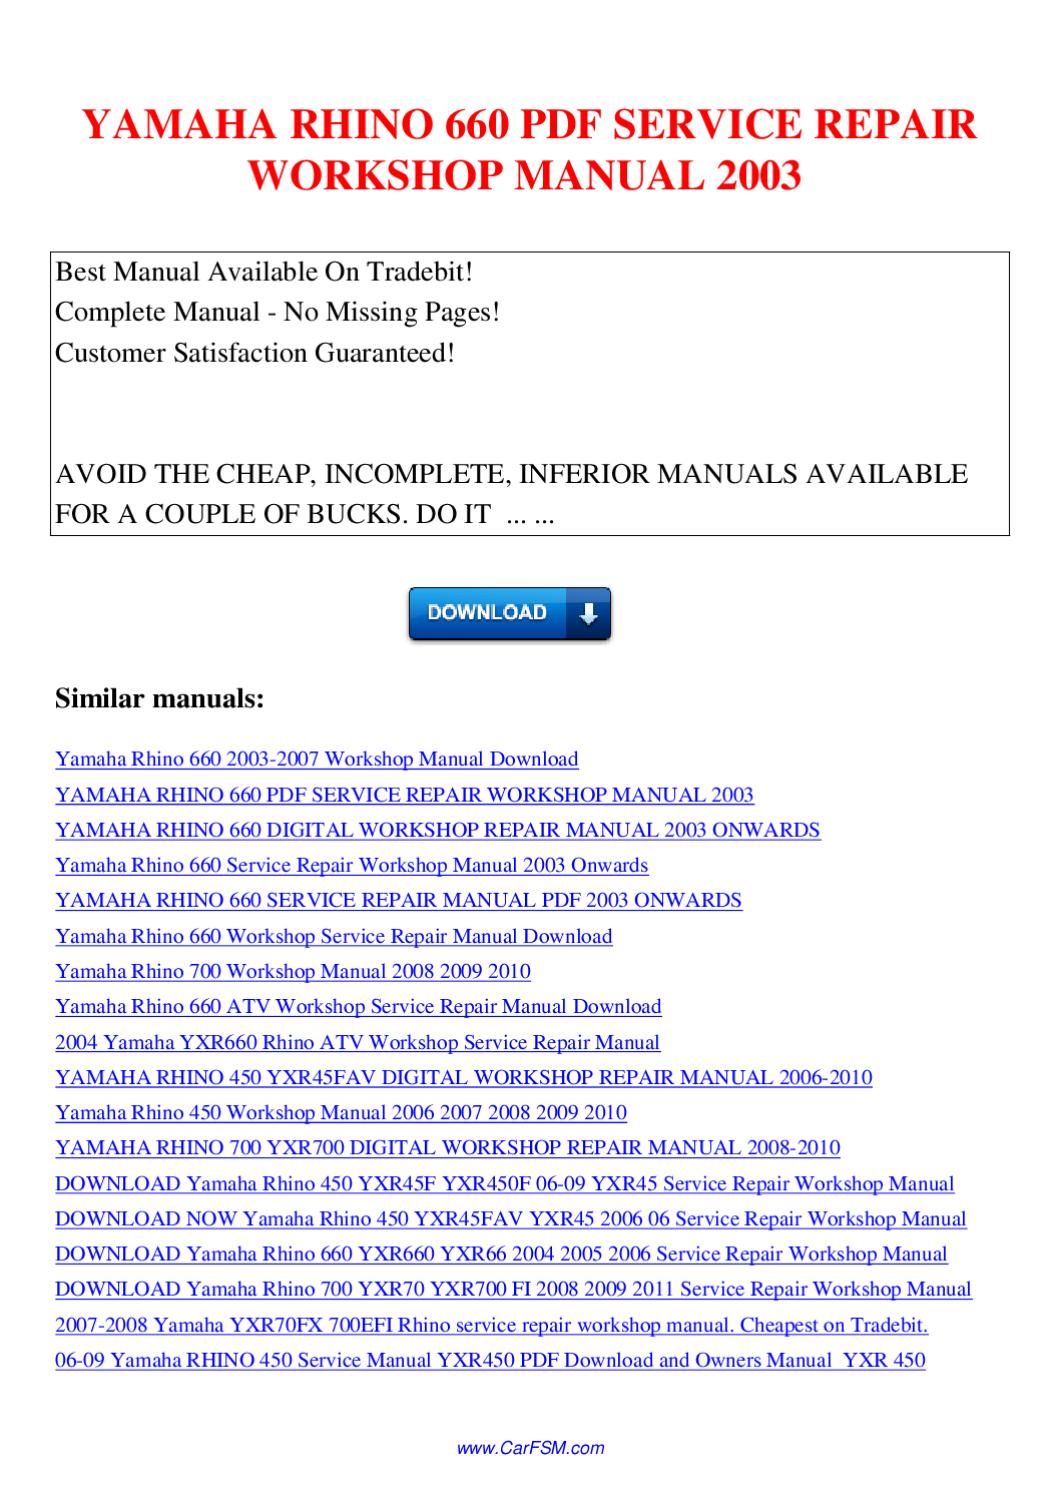 Grizzly 660 Repair Manual Download